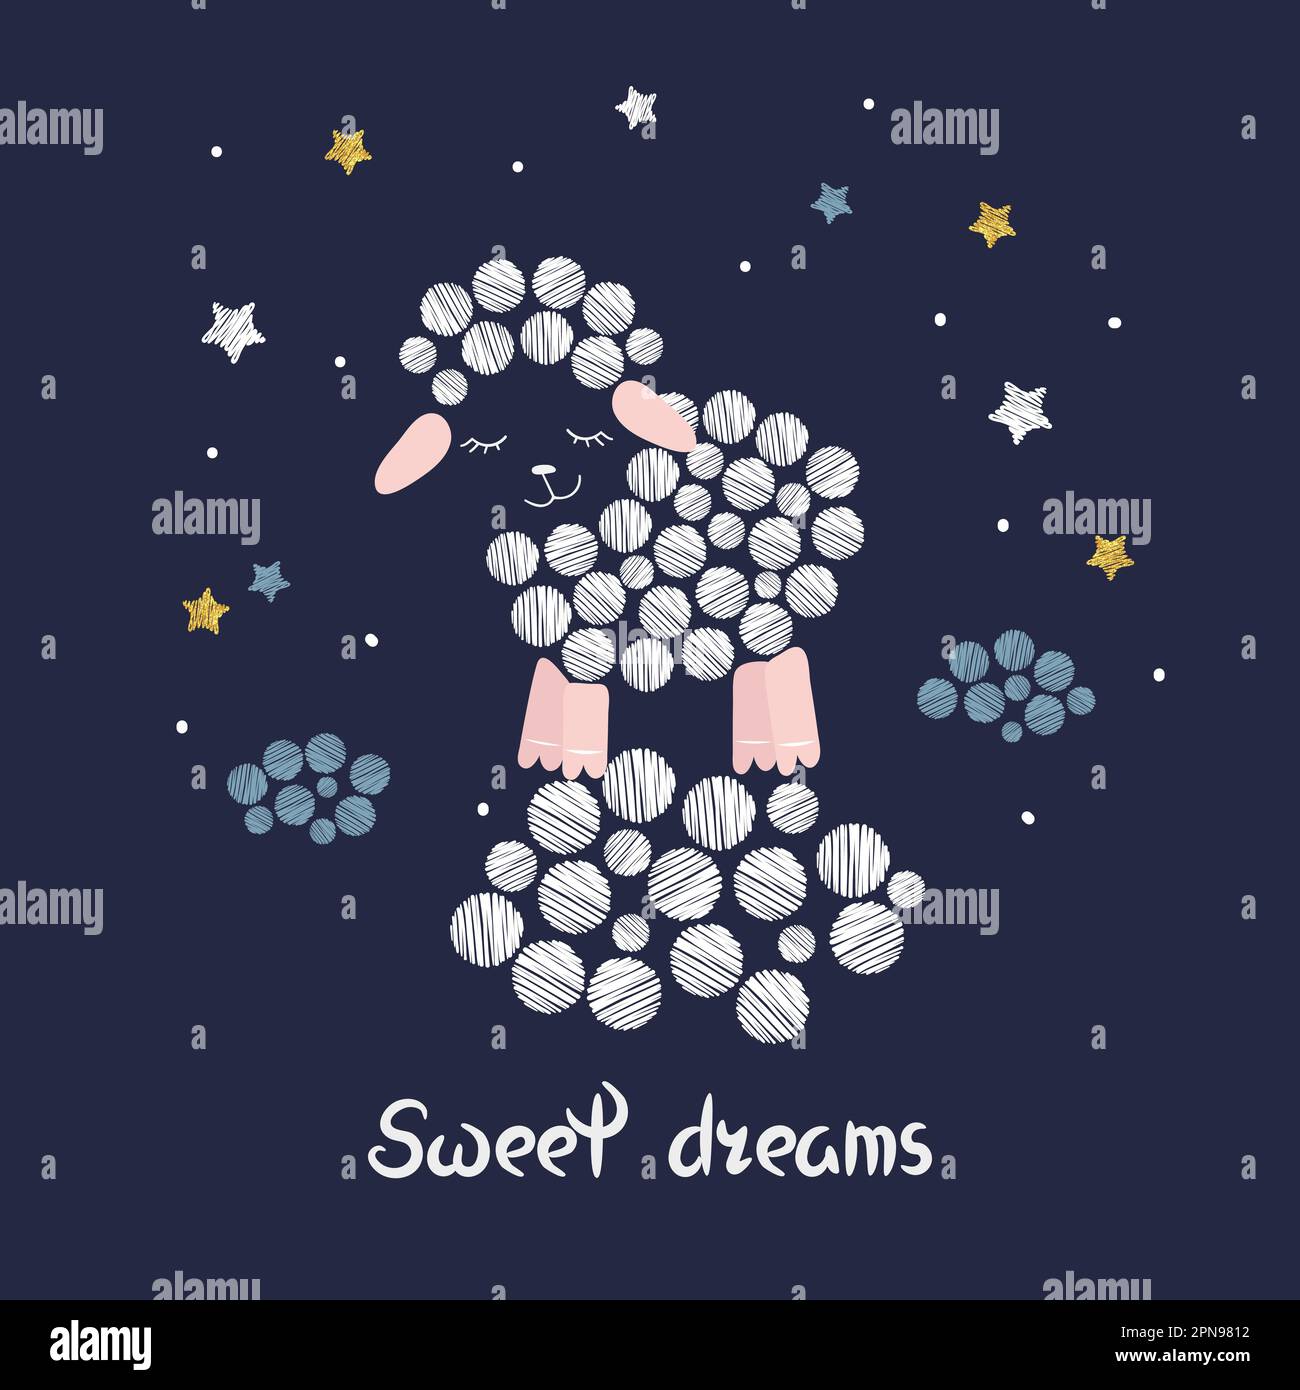 Illustrazione del vettore dei sogni dolci per i bambini. Carina pecora addormentata, nuvole e stelle. Illustrazione Vettoriale